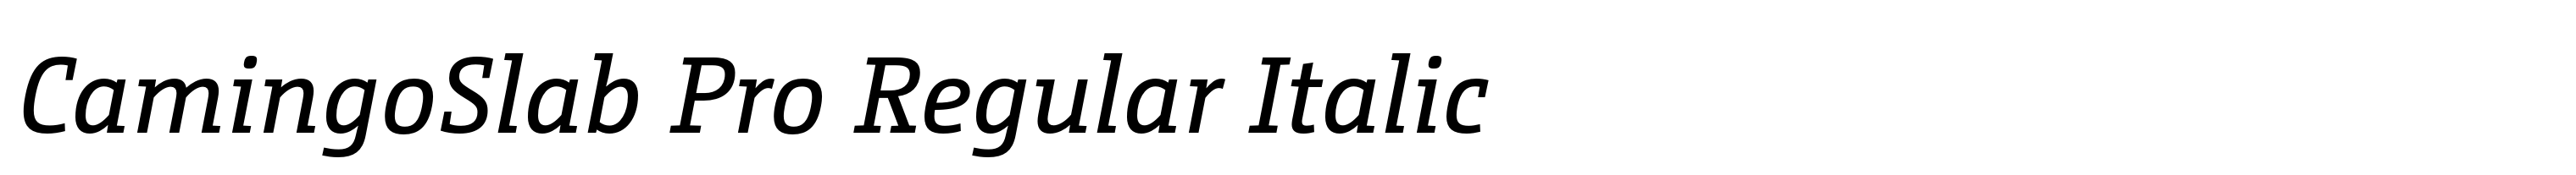 CamingoSlab Pro Regular Italic